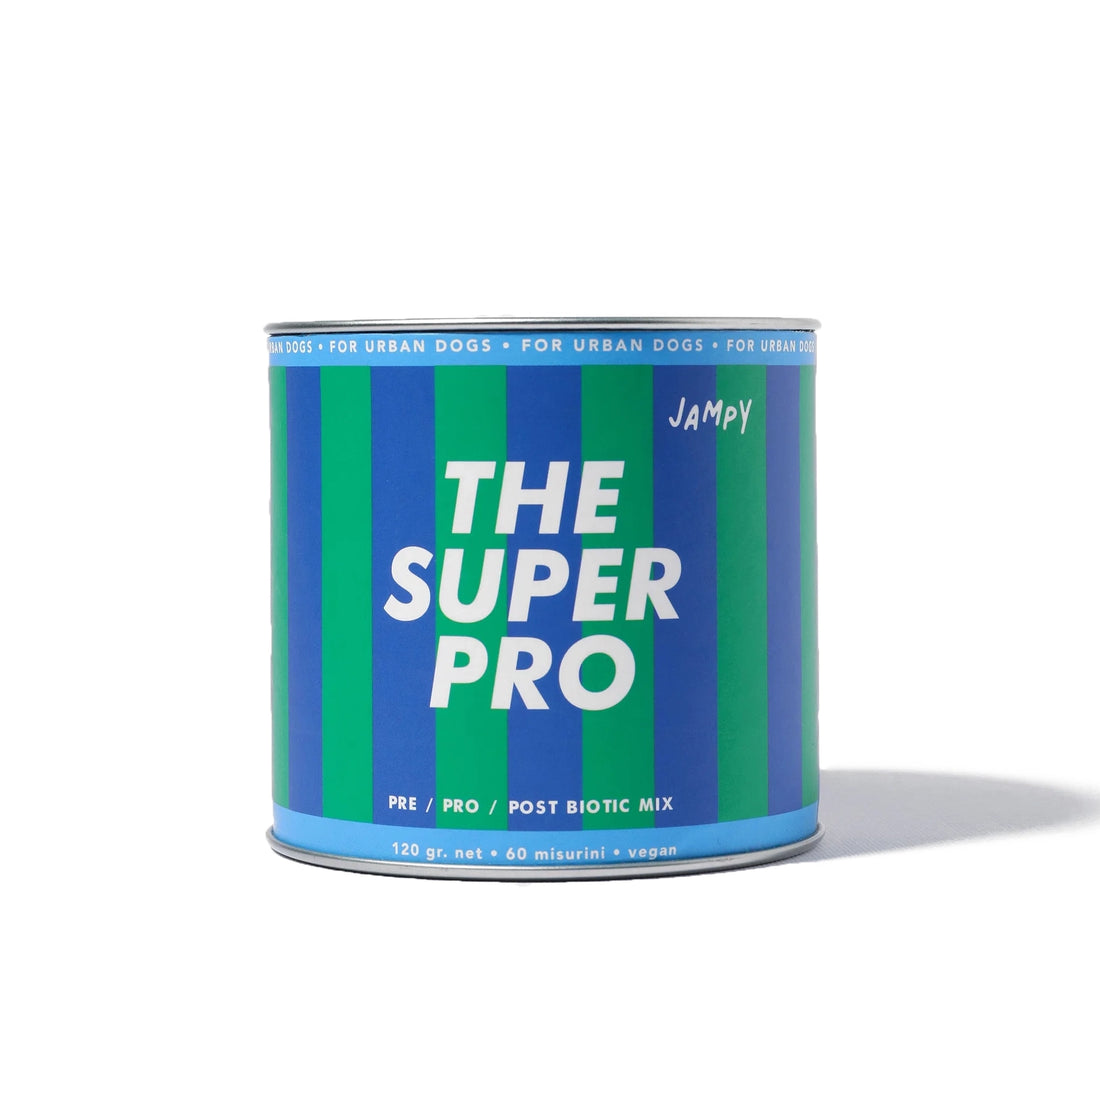 The Super Pro | Probiotic Mix